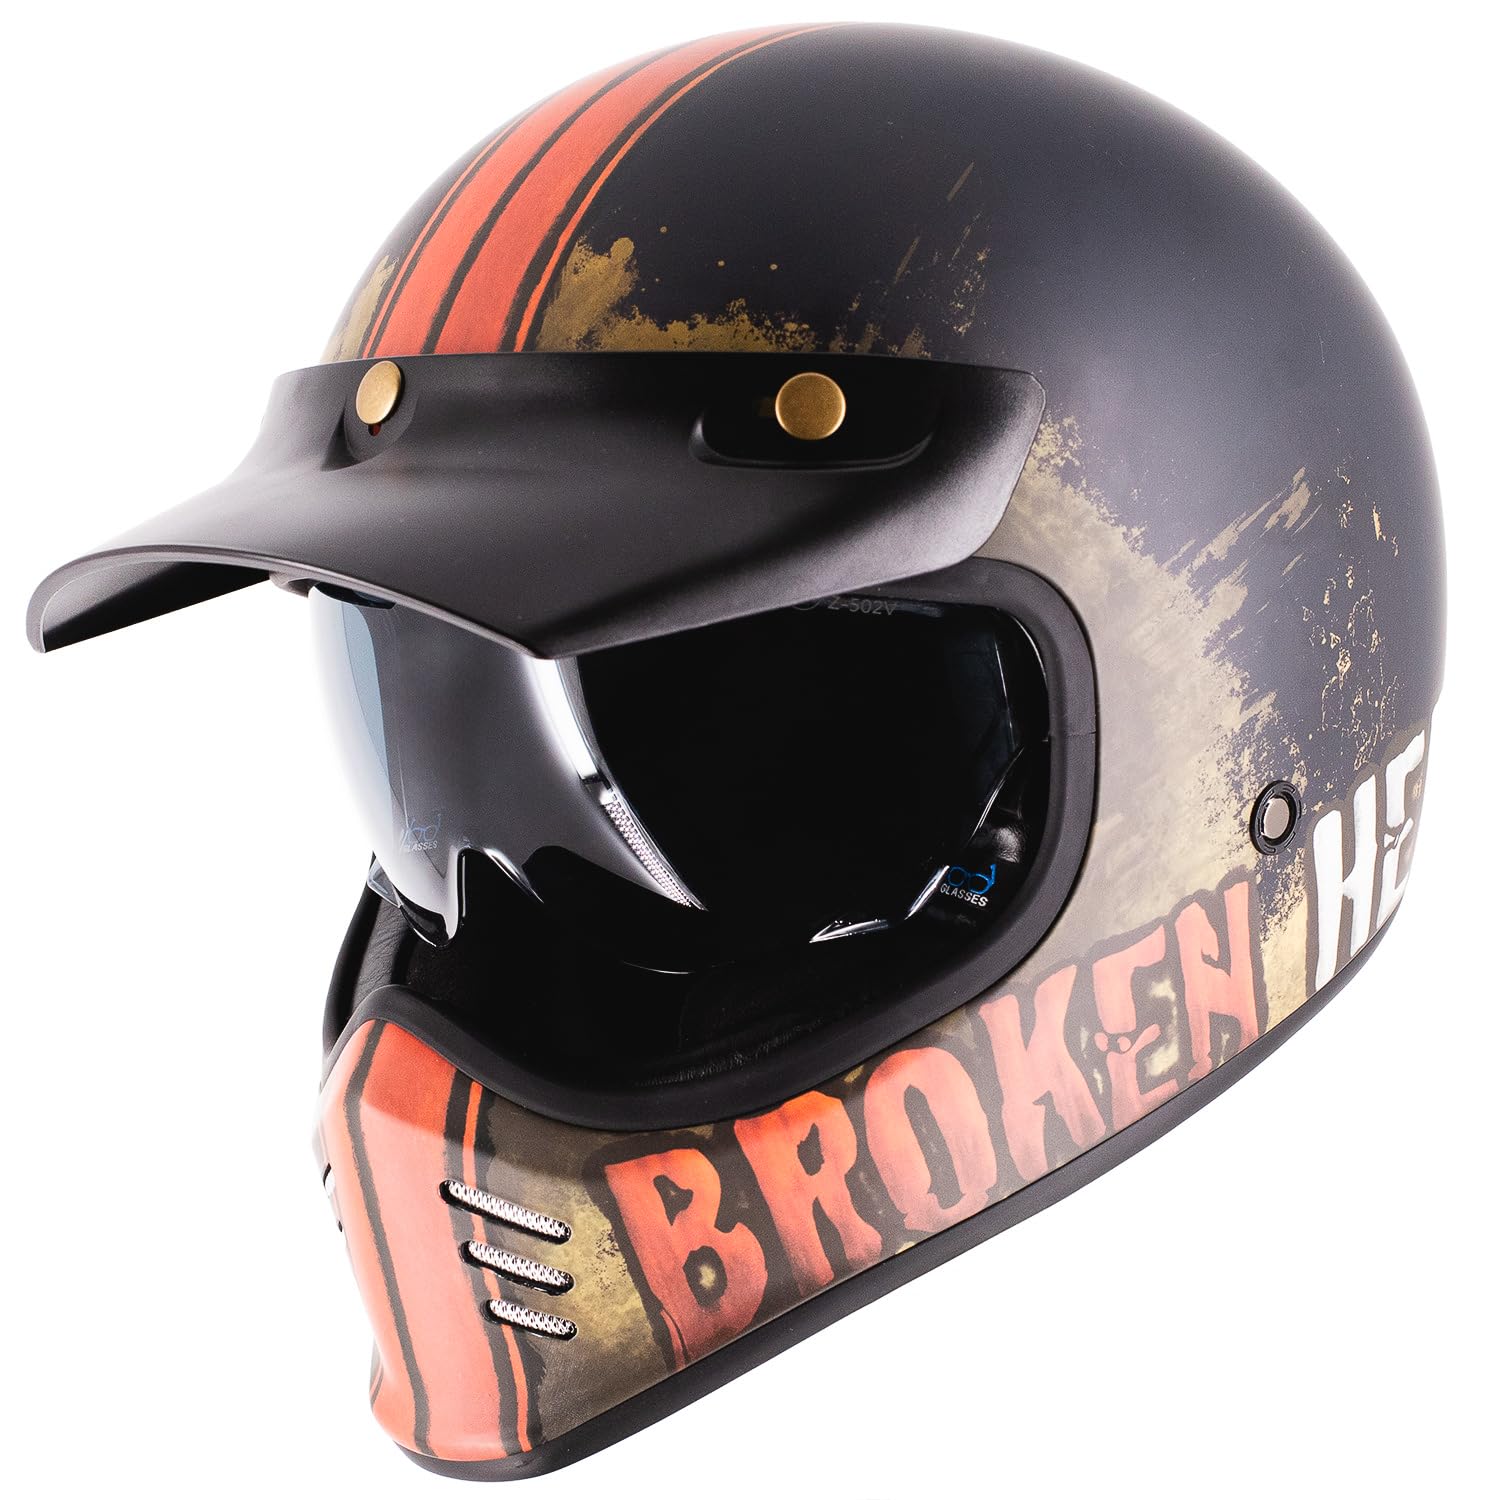 Broken Head Retro MX Helm Rusty Rider Orange Mit Sonnenblende - Vintage Look - Perfekt für Scrambler, Chopper, Bobber, Retrobike (M (57-58 cm)) von Broken Head